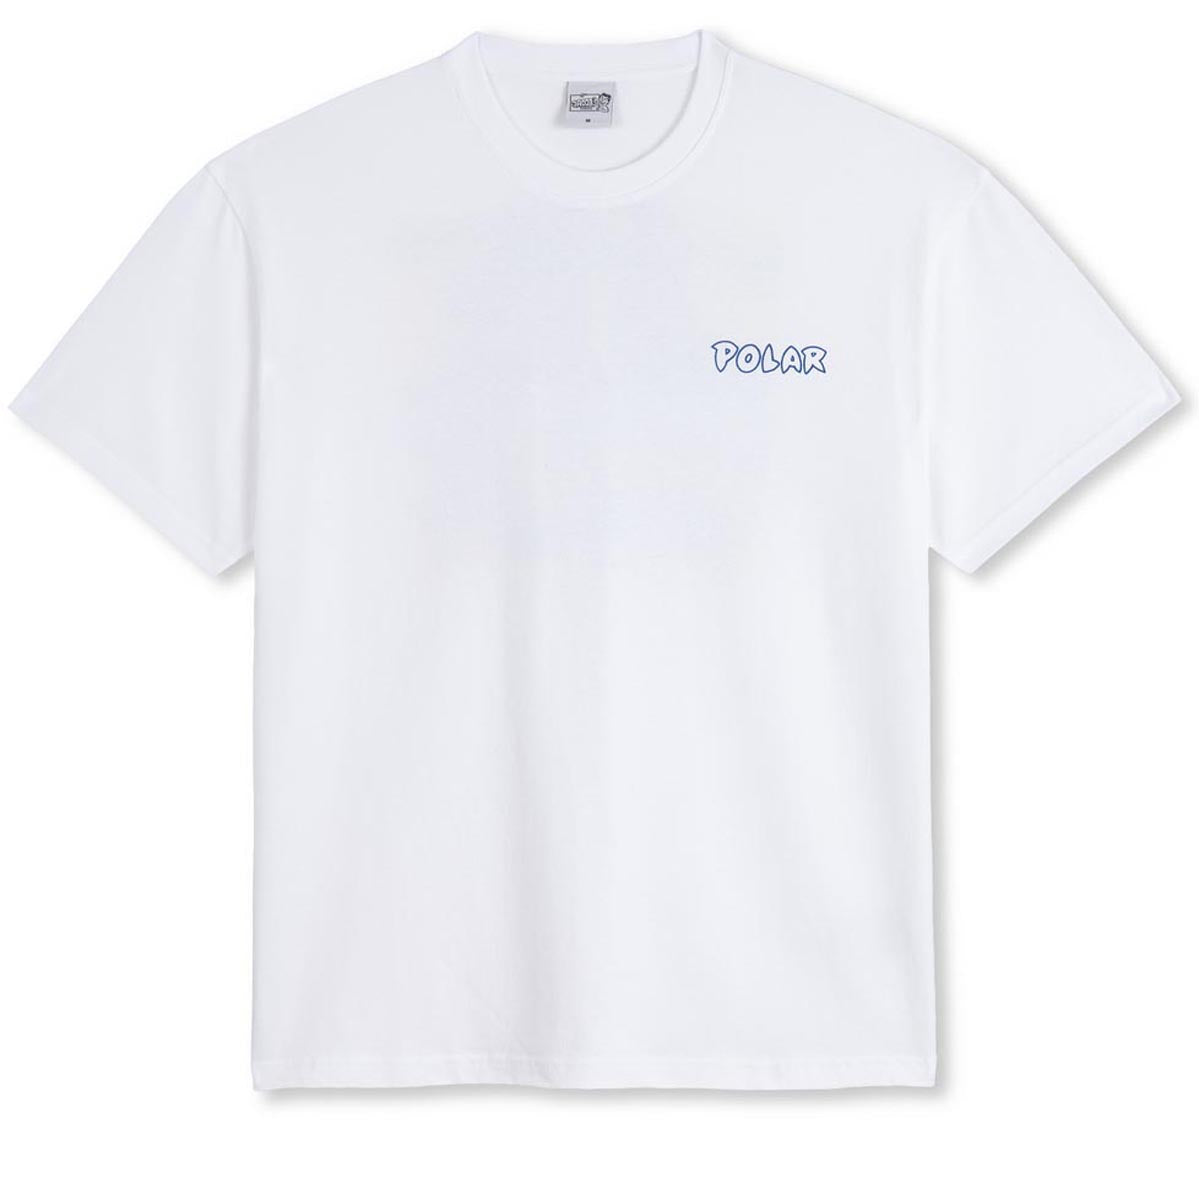 Polar Crash T-Shirt - White image 2